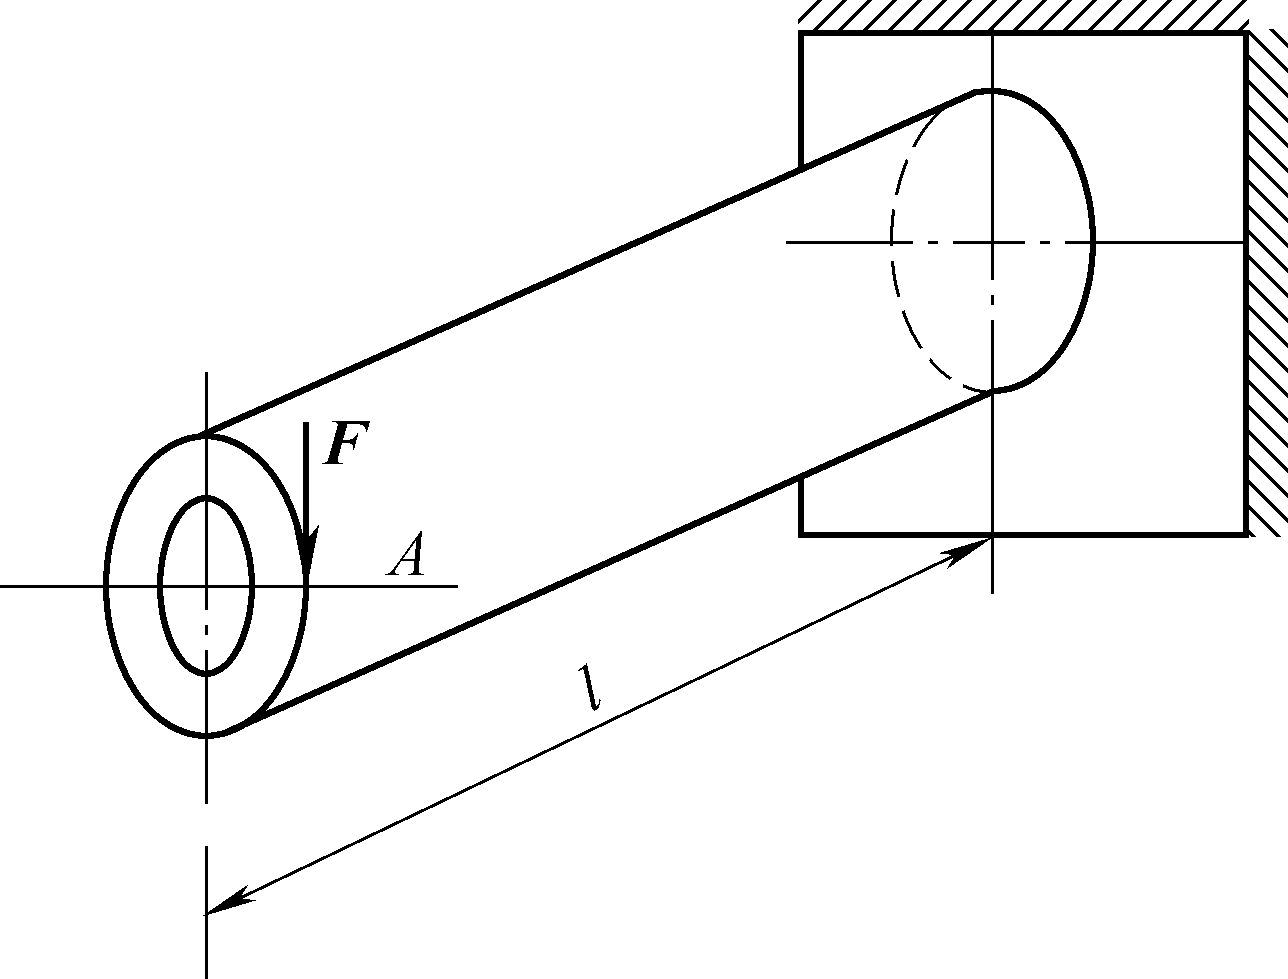 空心圆轴如图所示，外径D＝200mm，内径d＝160mm。在端部有集中力F，作用点为切于圆周的A点。